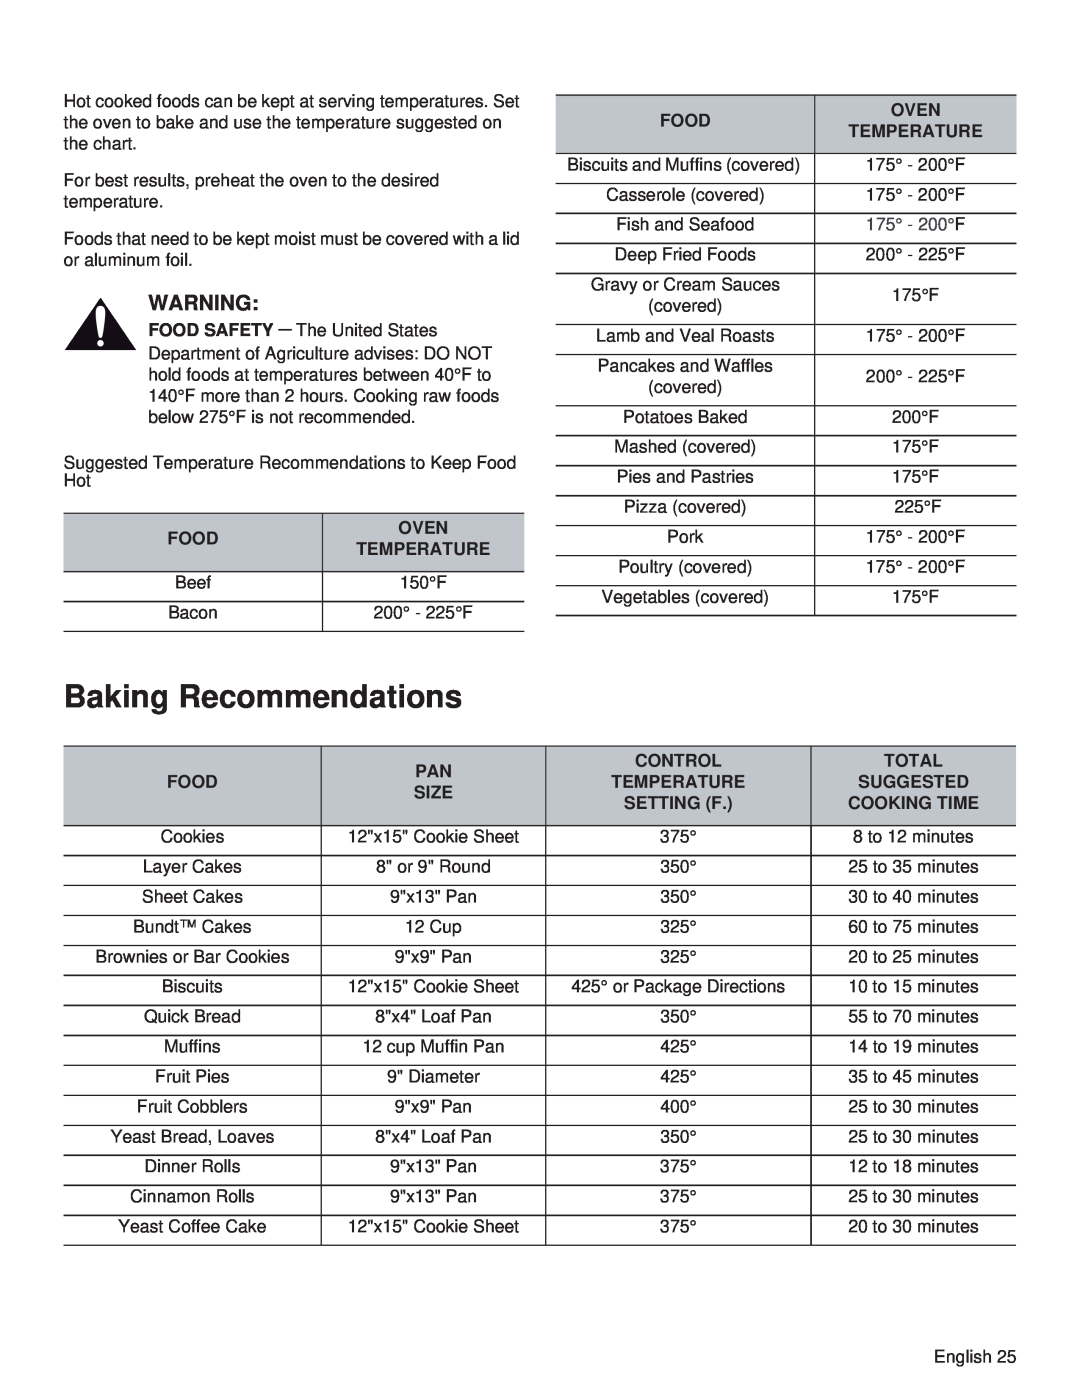 Thermador PRL30, PRL36, PRG48, PRG30, PRG36, PRL48 manual Baking Recommendations, 175 - 200F 